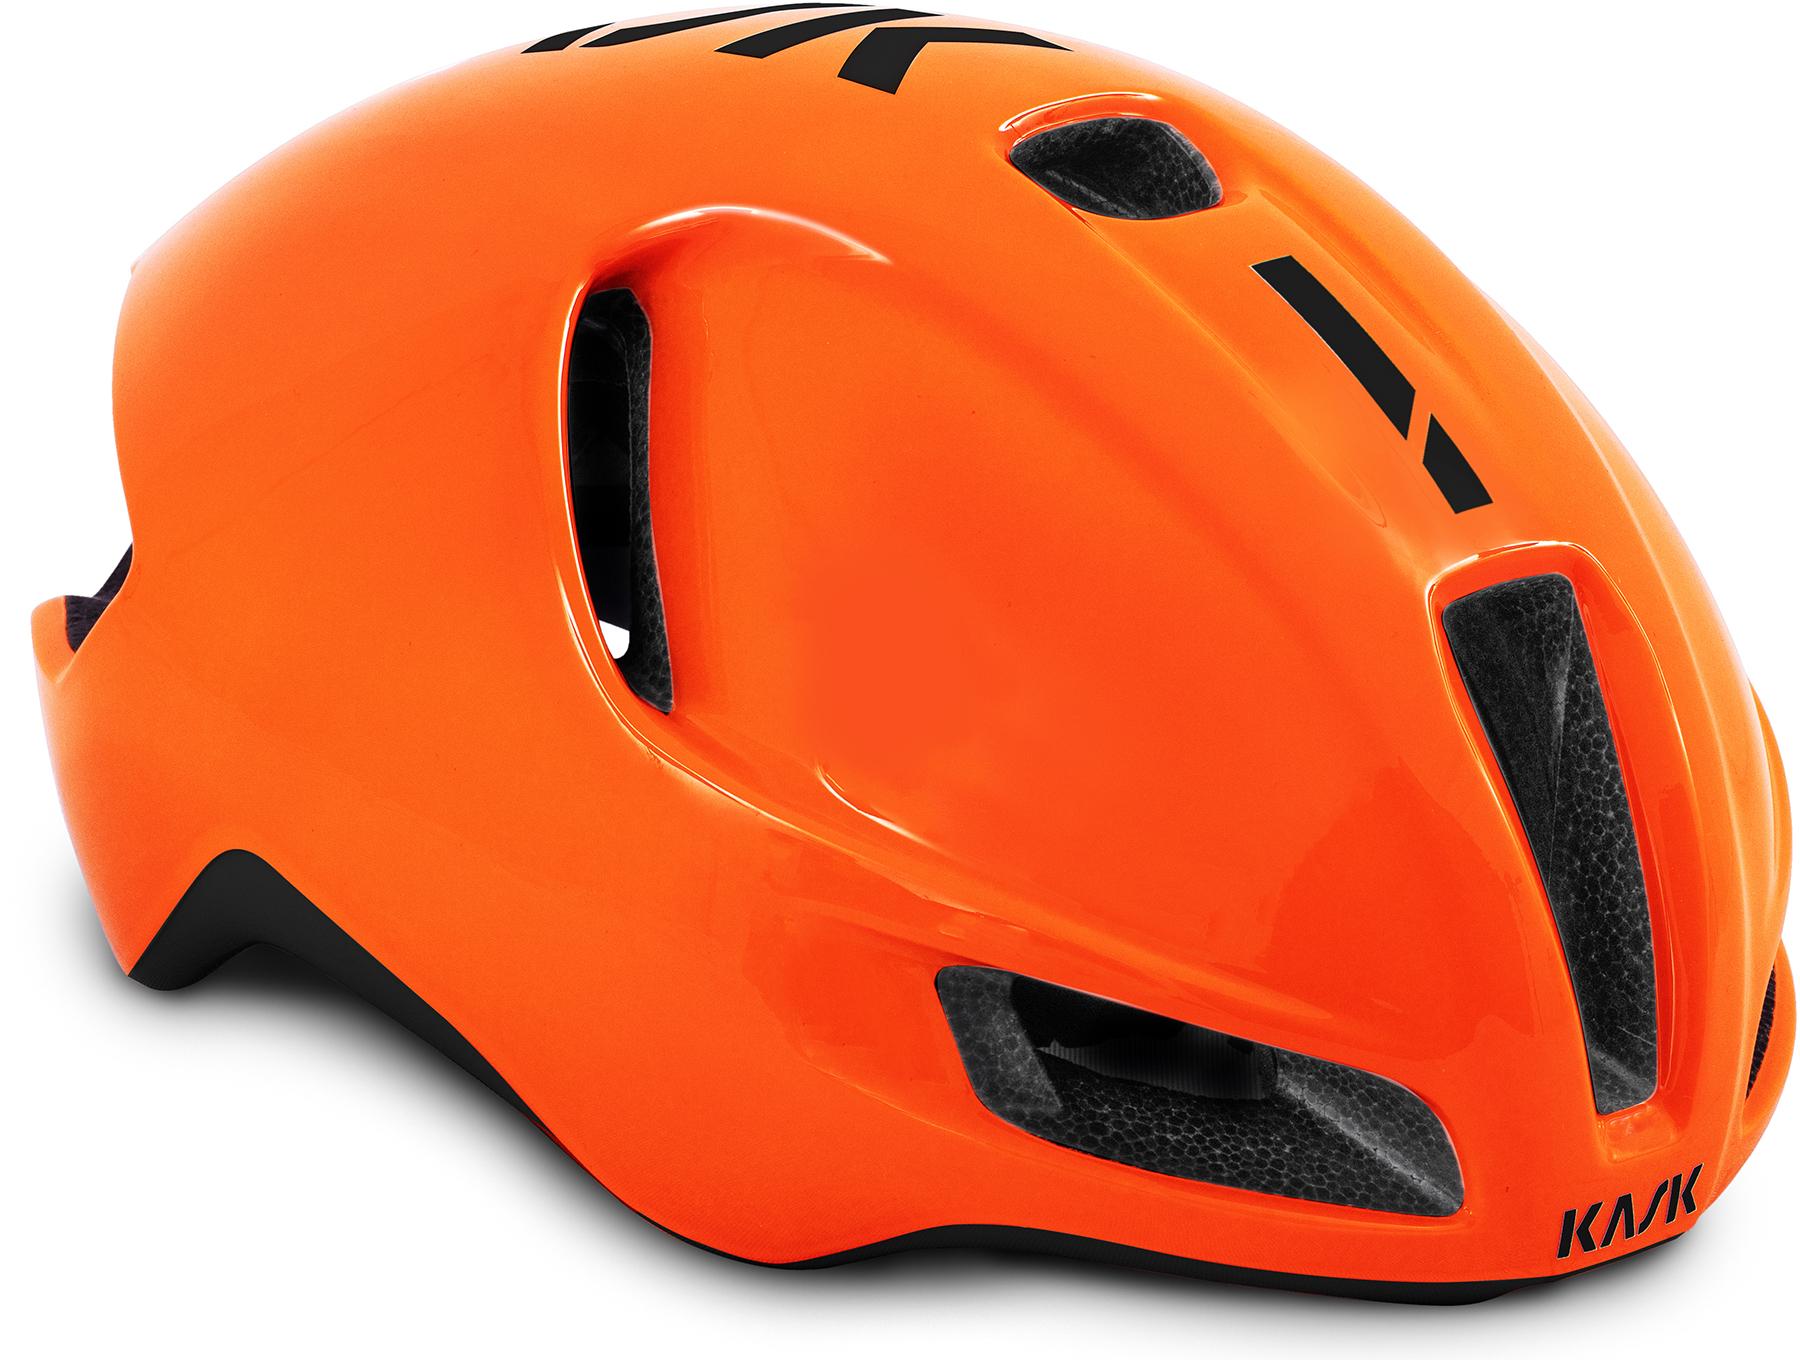 Kask Utopia Road Cycling Helmet (wg11) - Orange Fluo/black